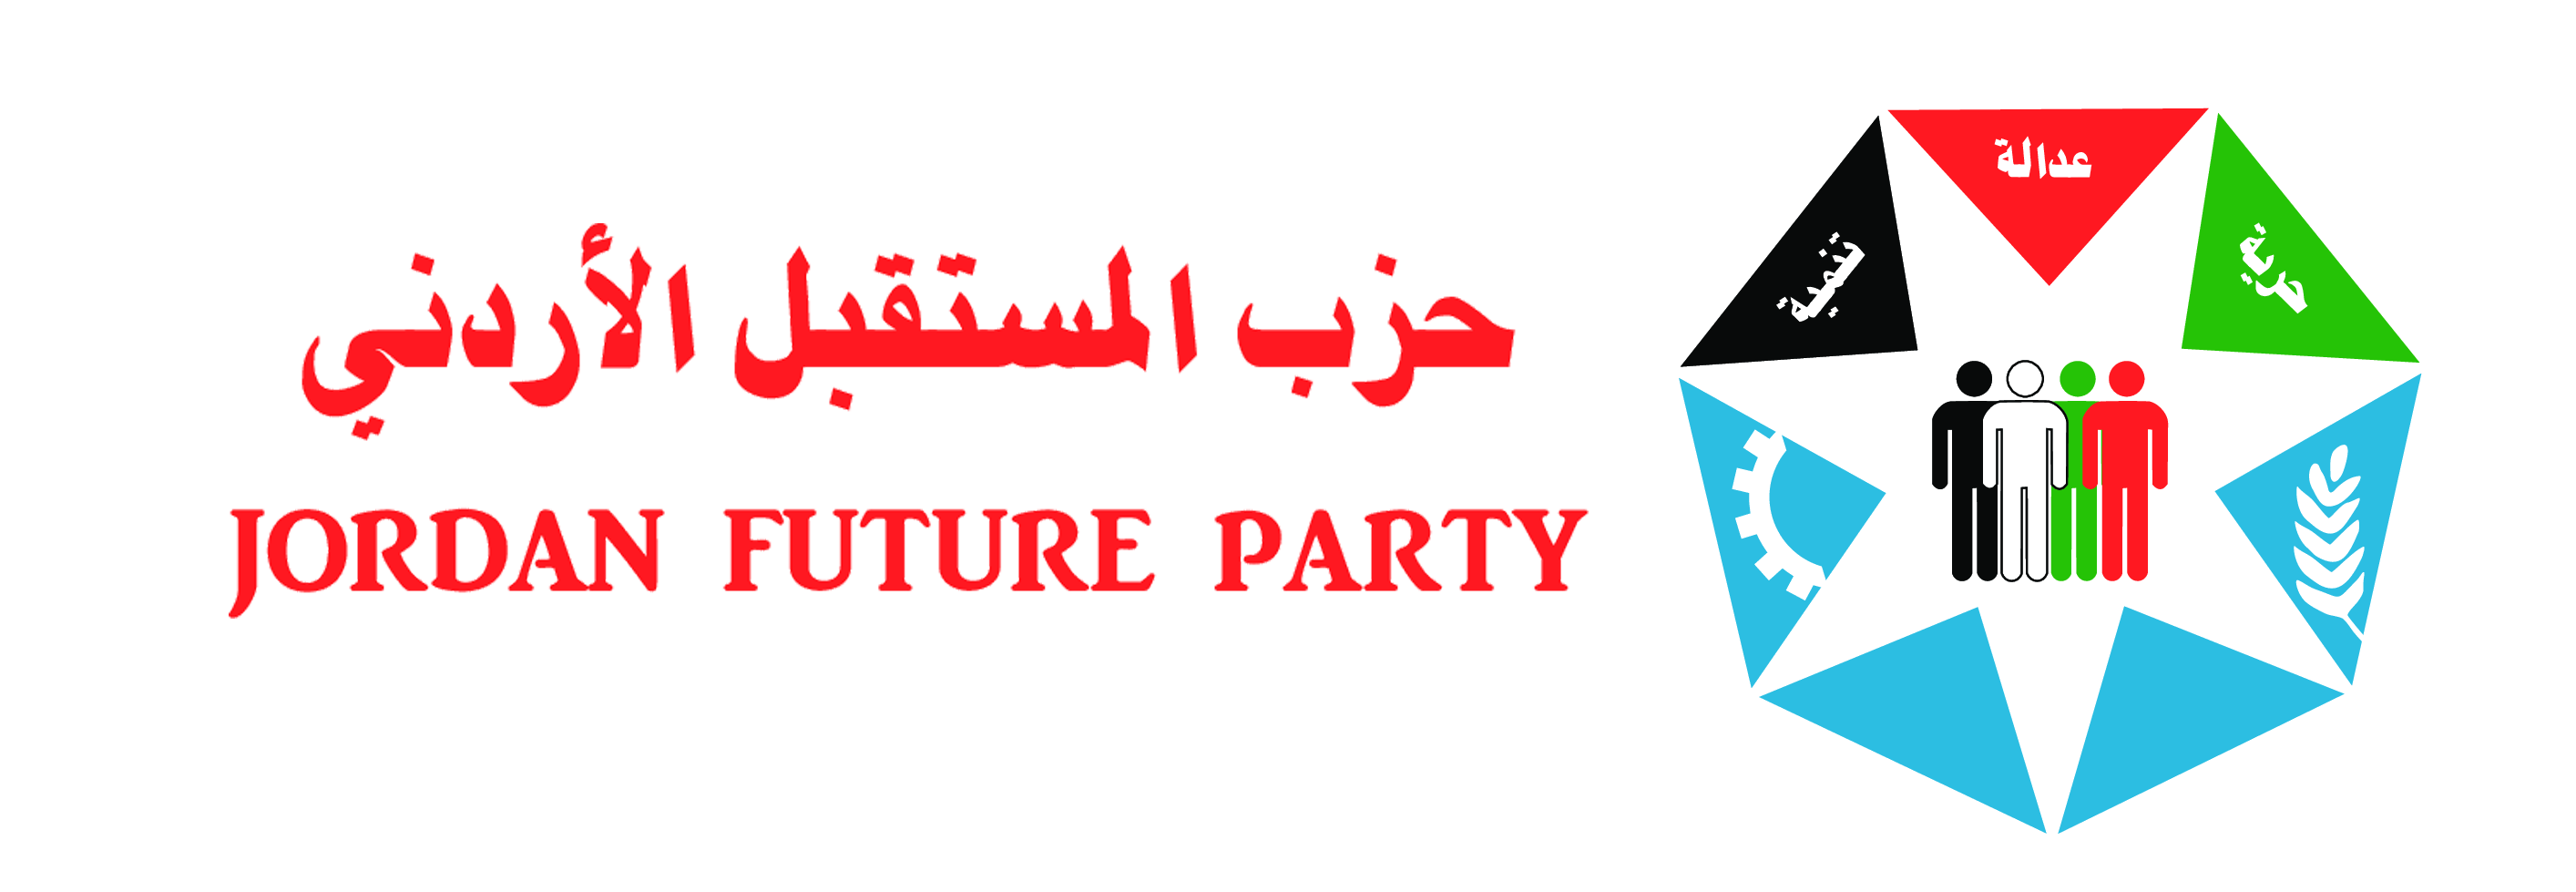 حزب المستقبل الأردني